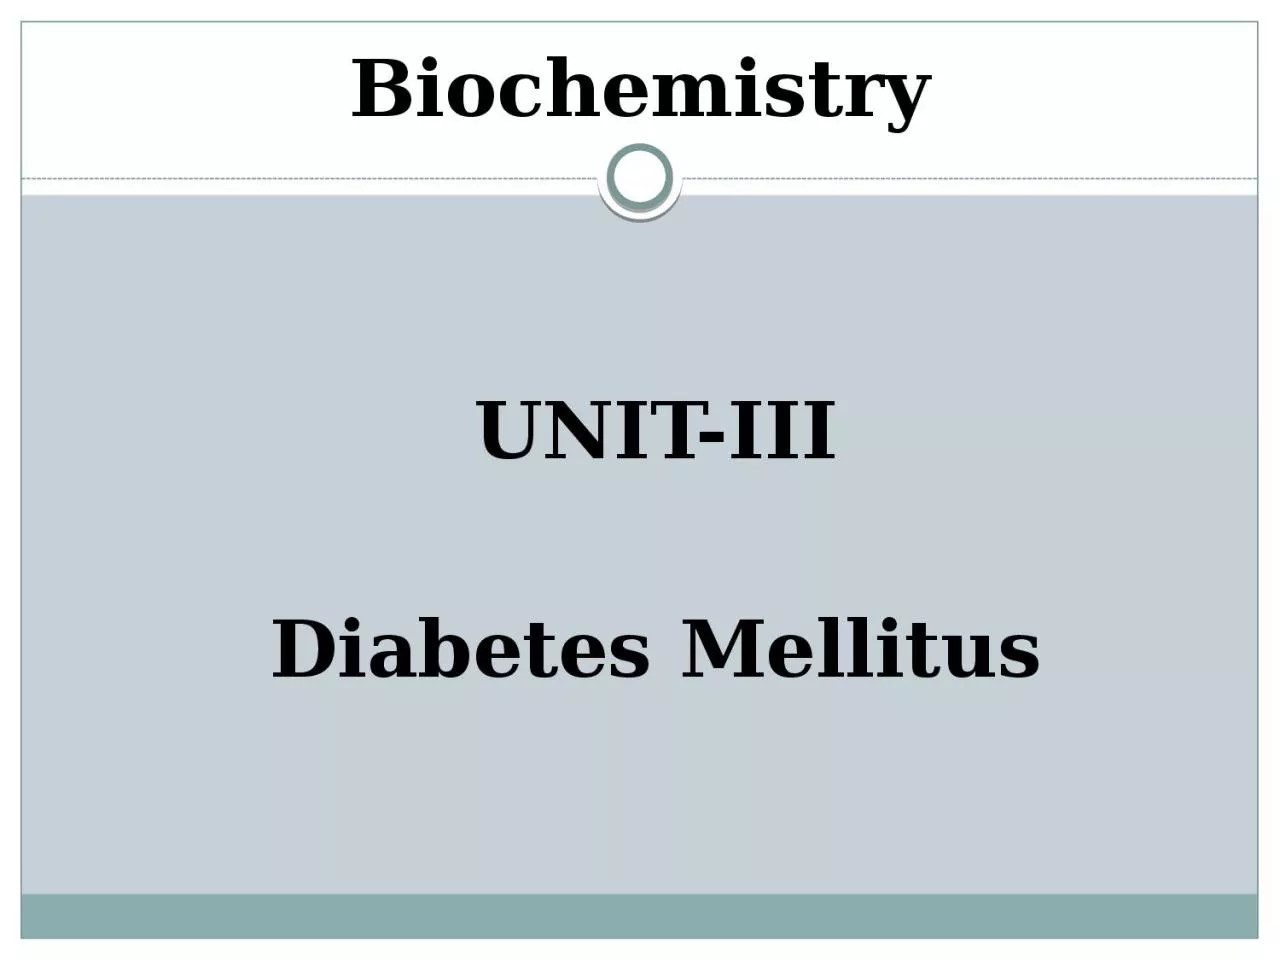 UNIT-III Diabetes Mellitus